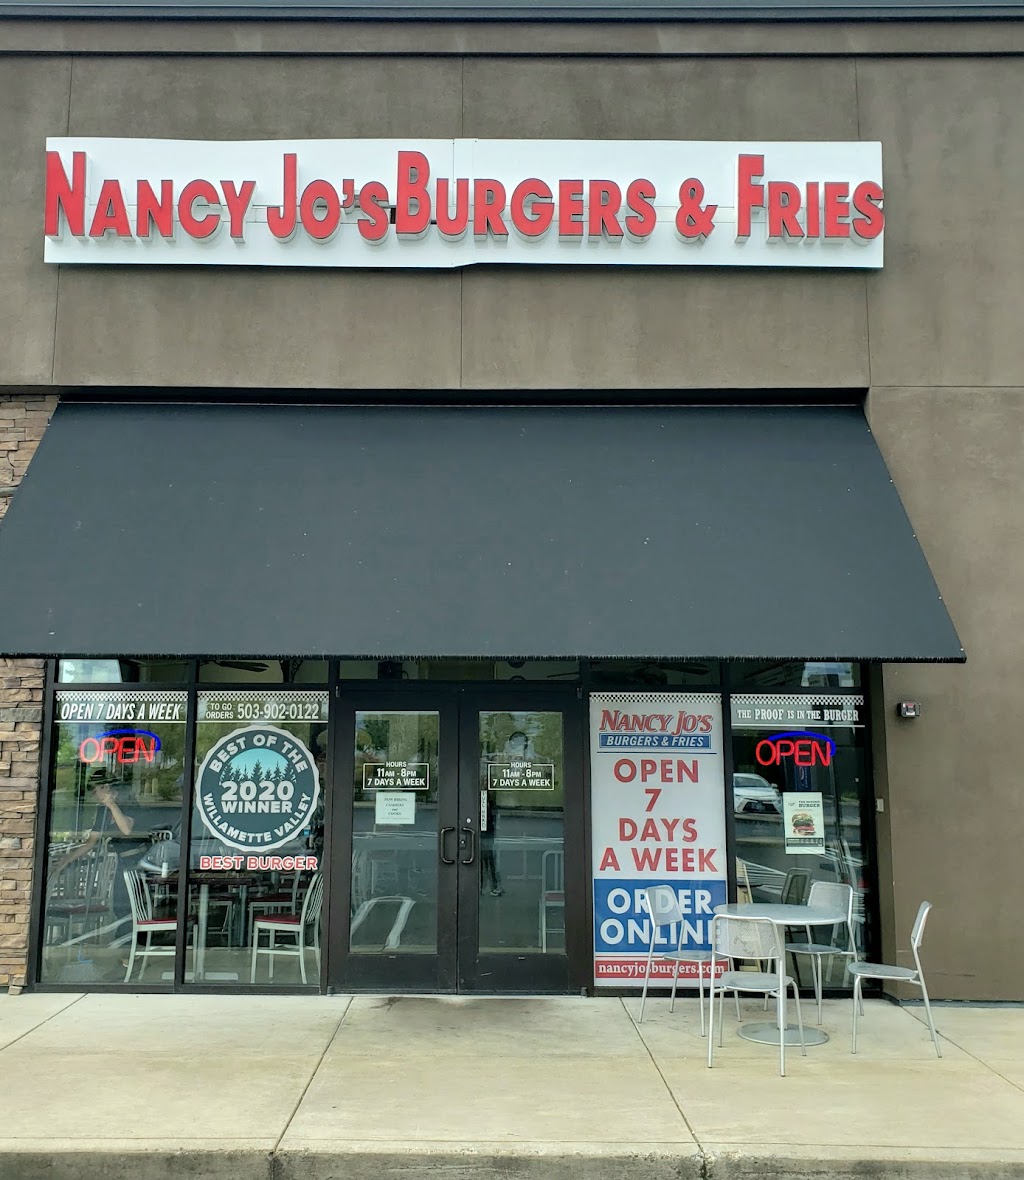 Nancy Jos Burgers And Fries | 105 N Arney Rd #170, Woodburn, OR 97071 | Phone: (503) 902-0122